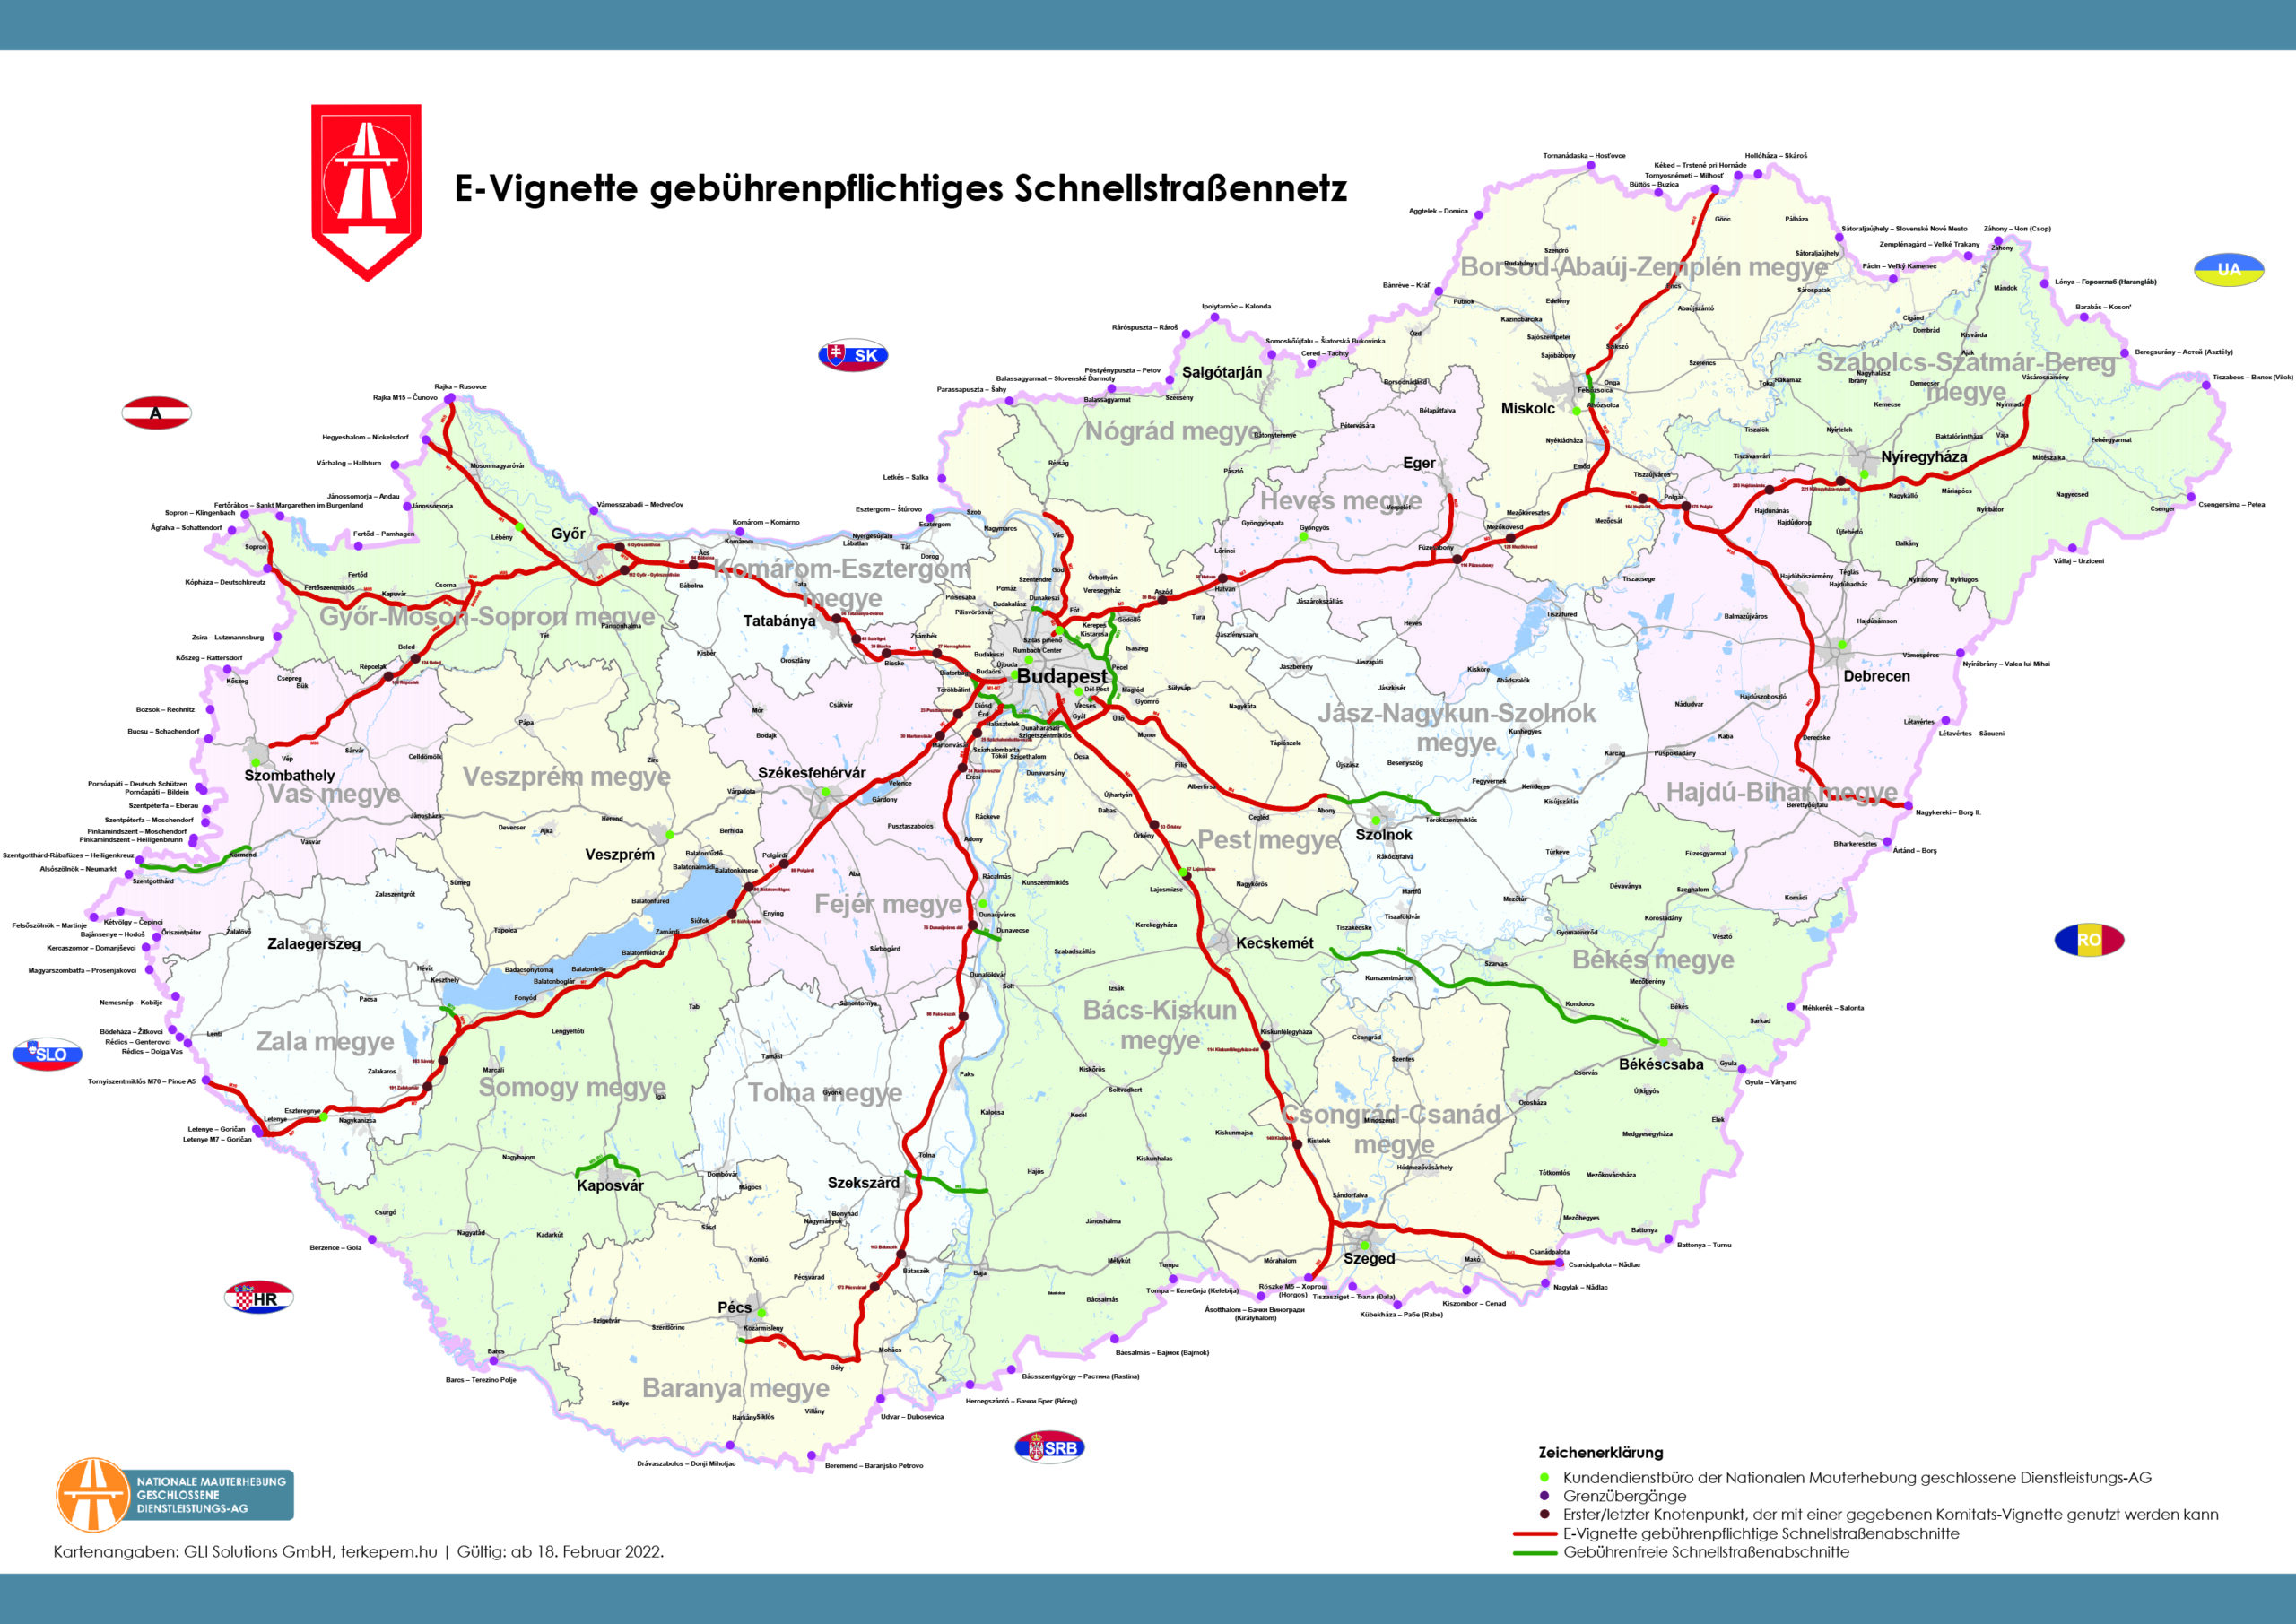 Karta vinjeta i autocesta s naplatom cestarine u Mađarskoj (Hu-Go)